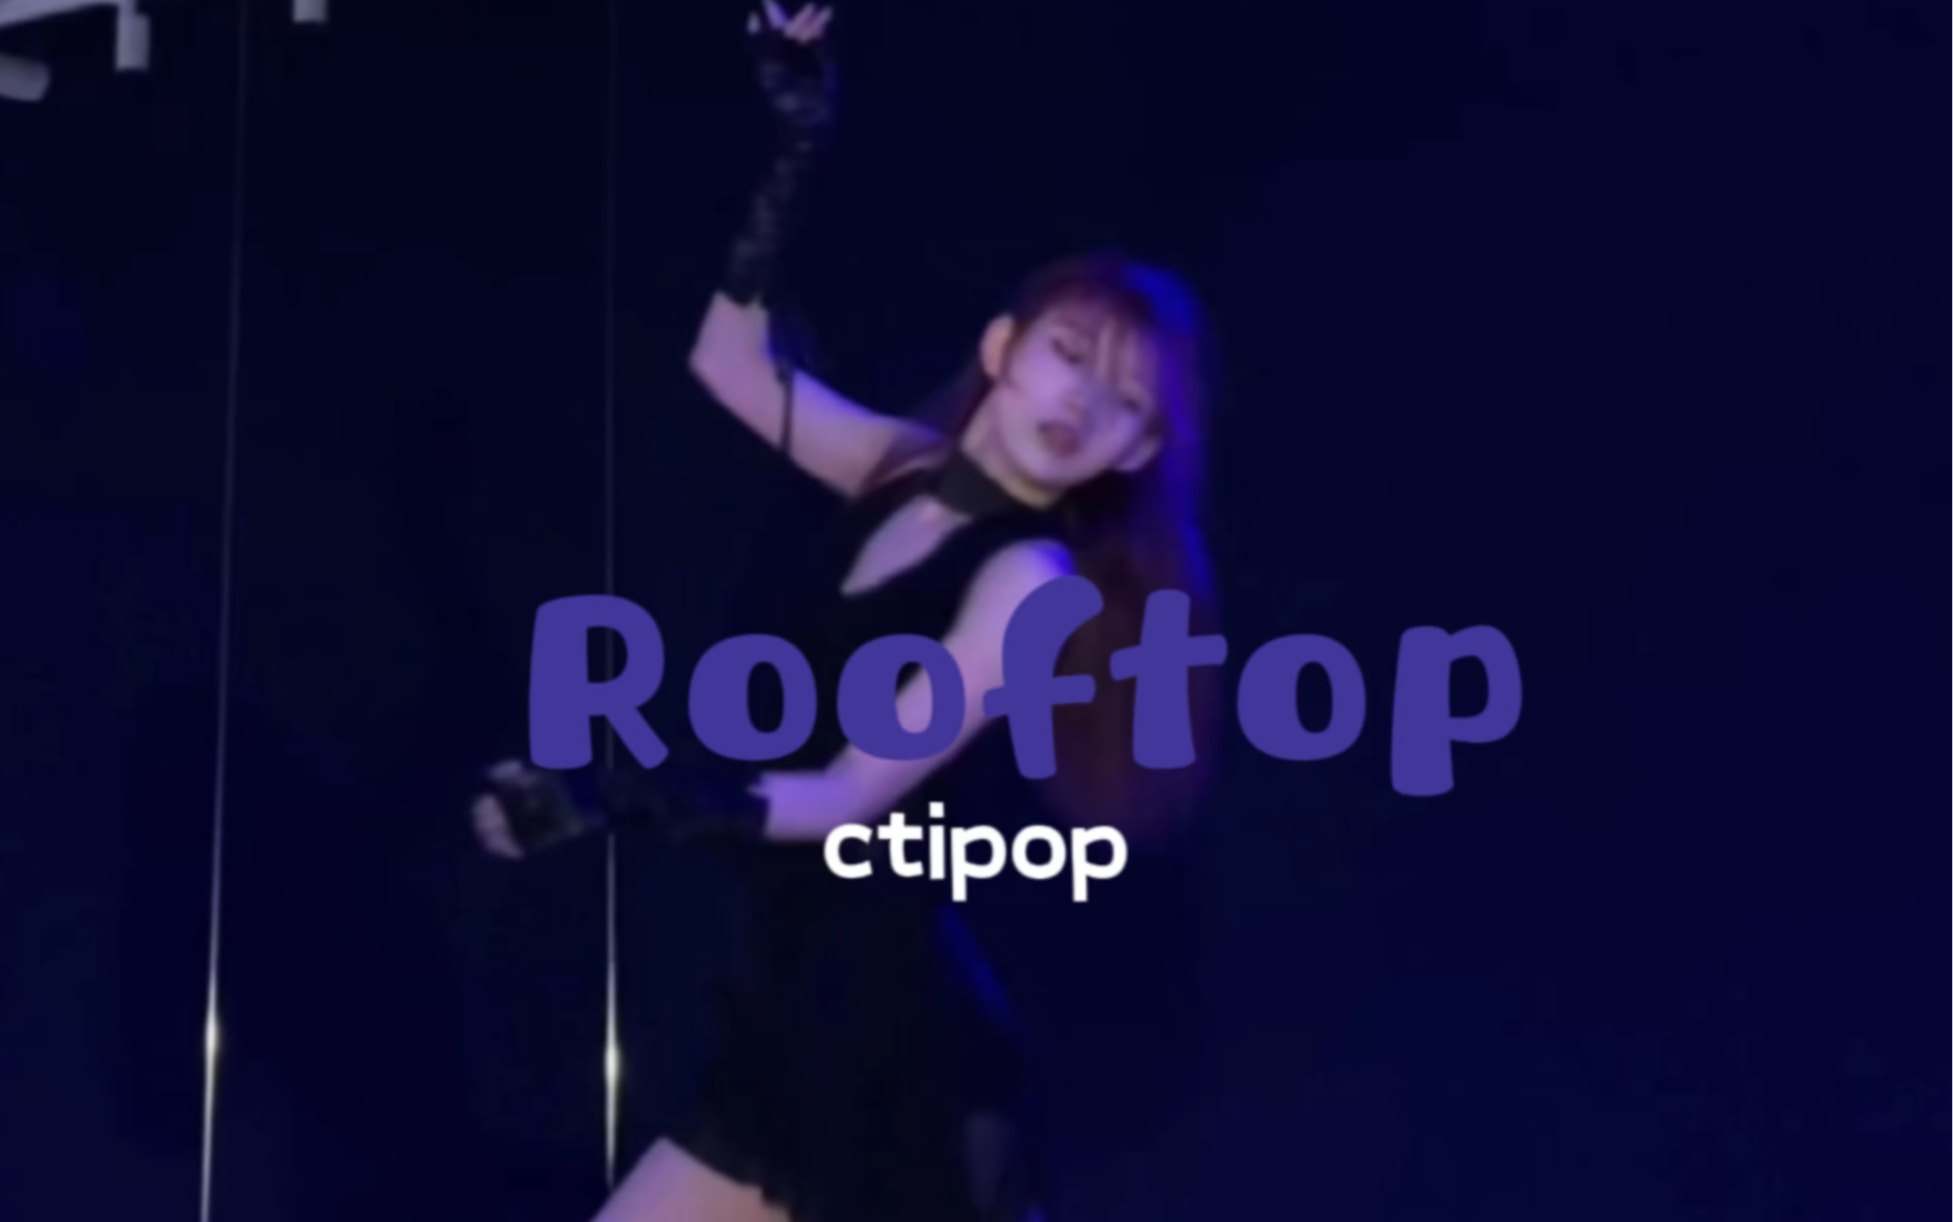 Rooftop-Yooa｜导师Hannah🦋氛围感的女主 拿捏🫴#厦门Ctipop #厦门舞蹈室 #零基础舞蹈 #舞蹈翻跳 #kpop